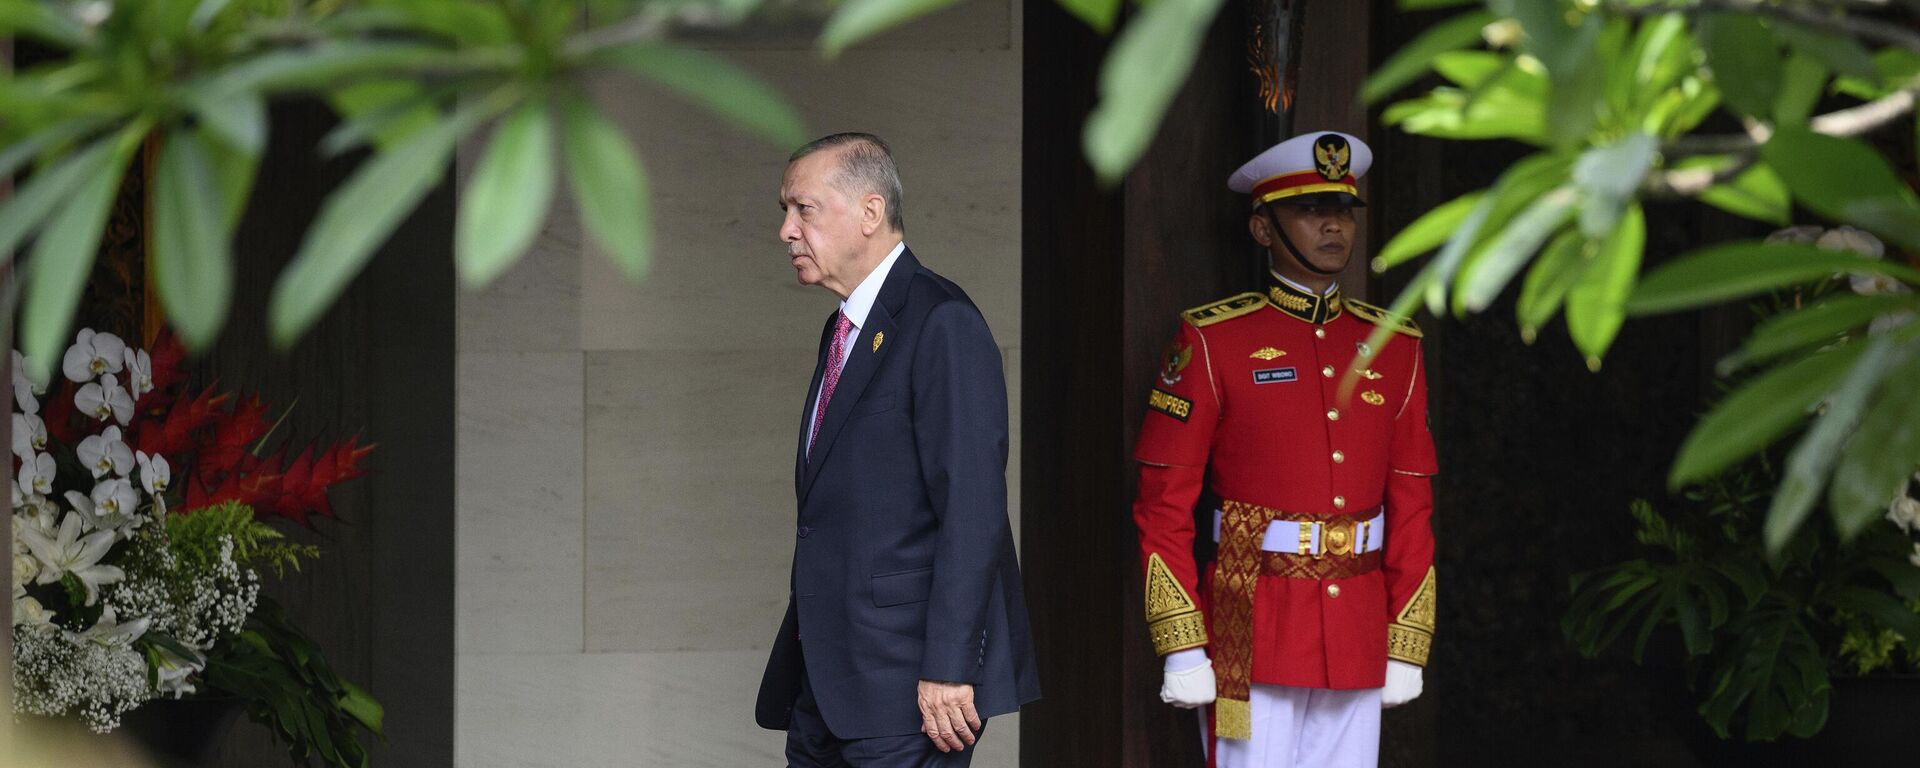 Президент Турции Реджеп Тайип Эрдоган прибывает к началу саммита G20 в Бали, Индонезия - Sputnik Латвия, 1920, 29.11.2022